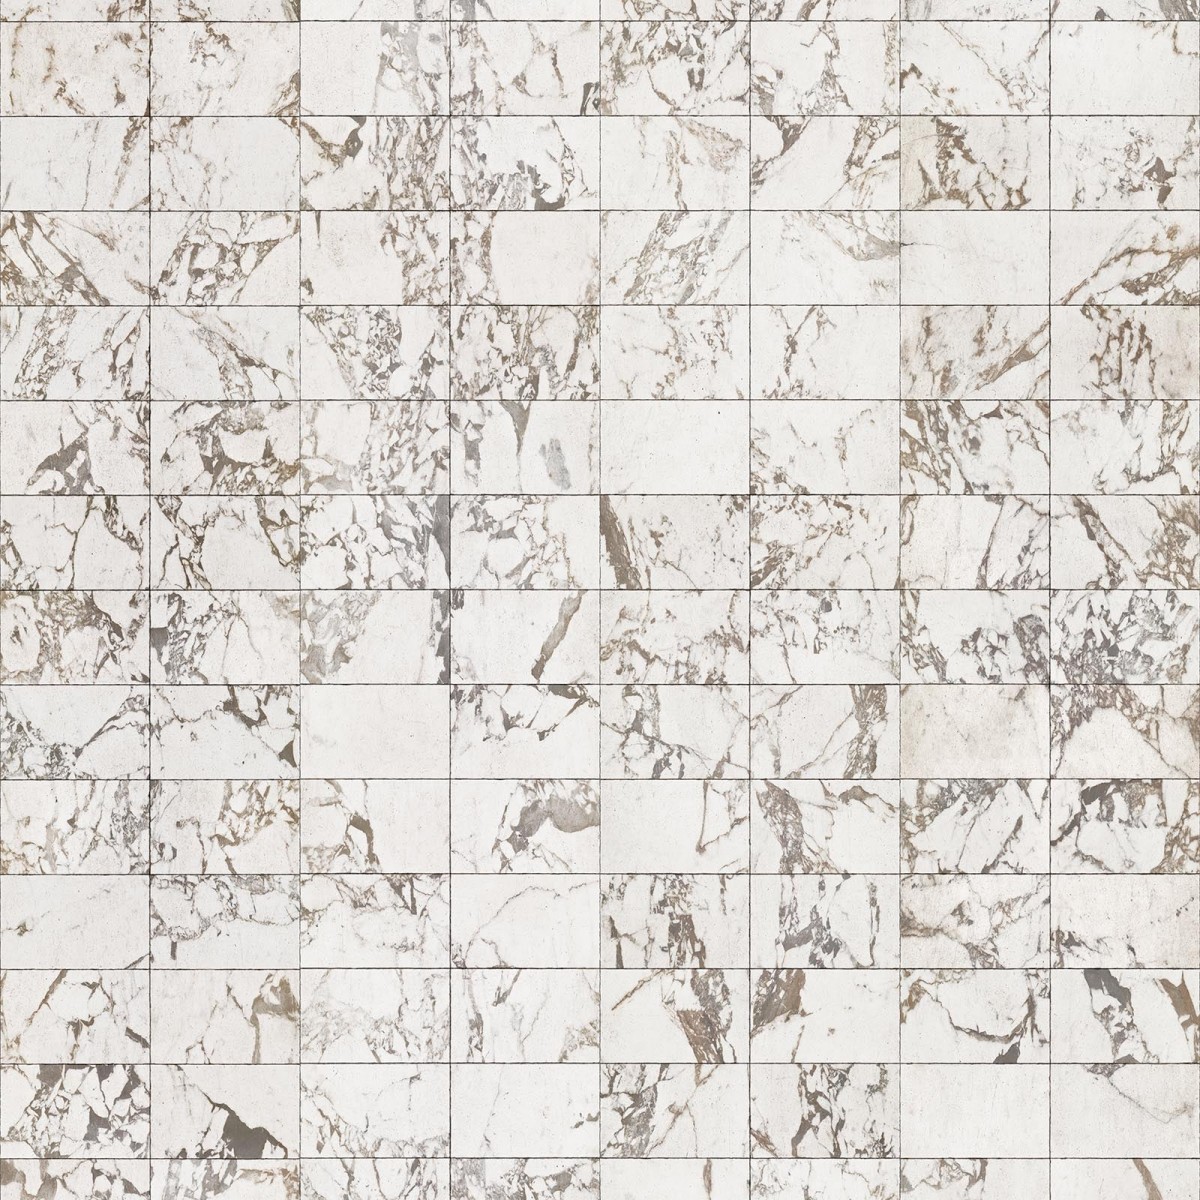 Tapet designer Materials Marble, Tiles 24.4x15.4cm, White by Piet Hein Eek, NLXL, 4.9mp / rola, Tapet Exclusivist 